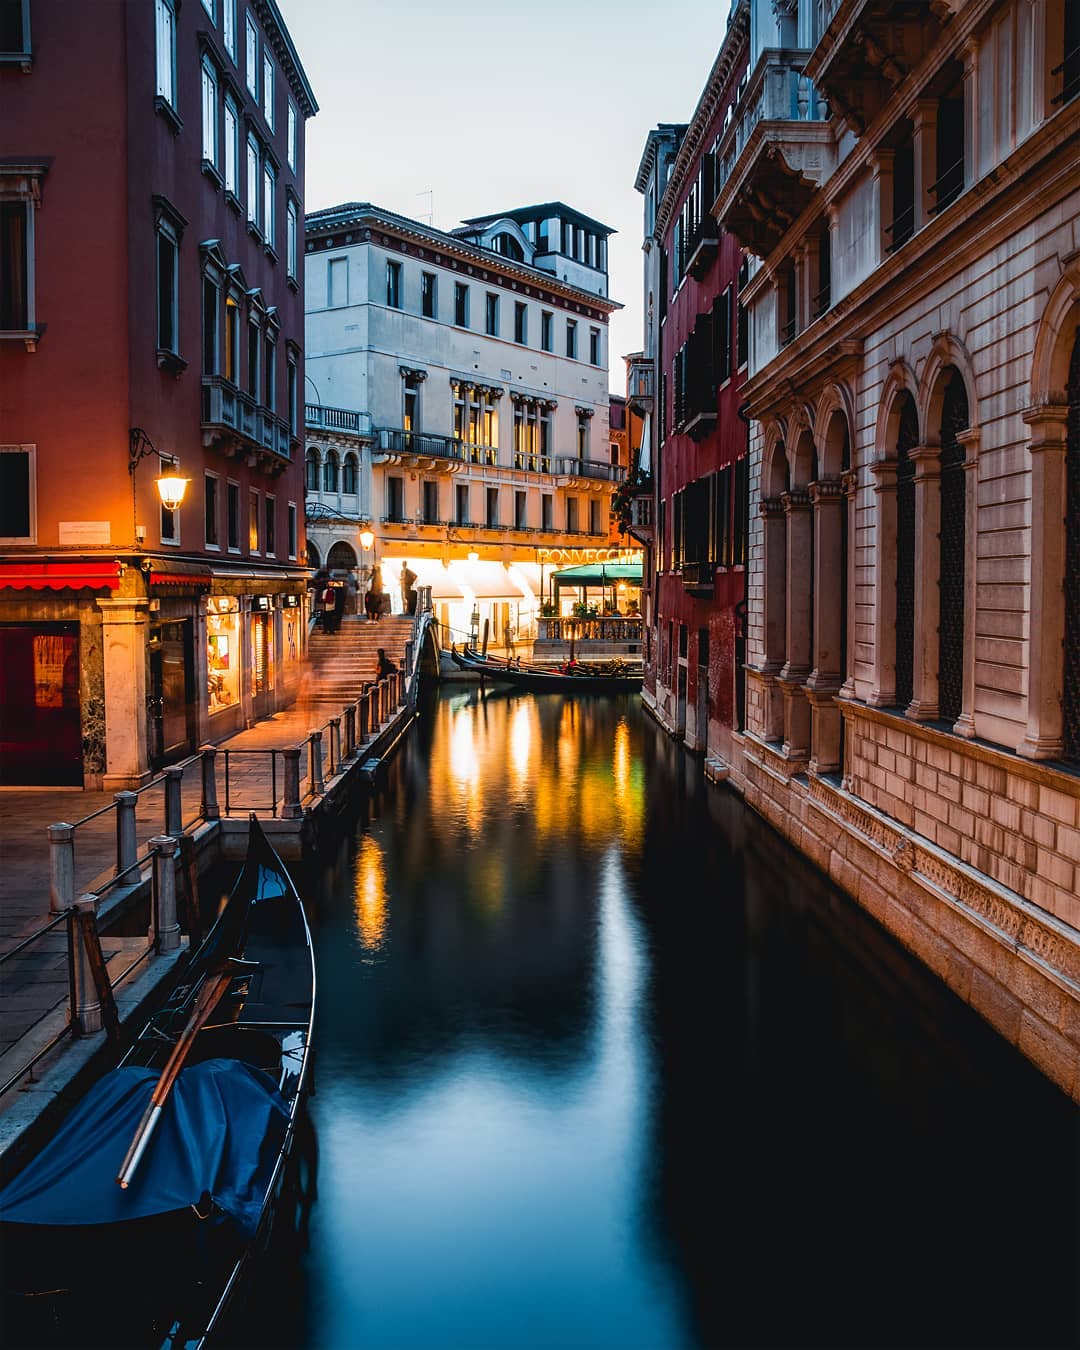 Canal reflection⁠
.⁠
.⁠
.⁠
#italynearme #super_italy #visiteurope #italy_vacations #loves_united_italy #italytravel #igvenezia #ig_venezia #venezianity #italy_passion #italytour #italy_vacations #italyiloveyou #travelsitaly #uniladadventure #veneziacityitaly #igersitalia #shotz_of_italia #italianlandscapes #yallersitalia #italianroamers #destination_italy #italygram #ImagesofItaly #europe_vacations #living_europe #yallerseurope #TopItalyPhoto #italy_photolovers #longexposnipers